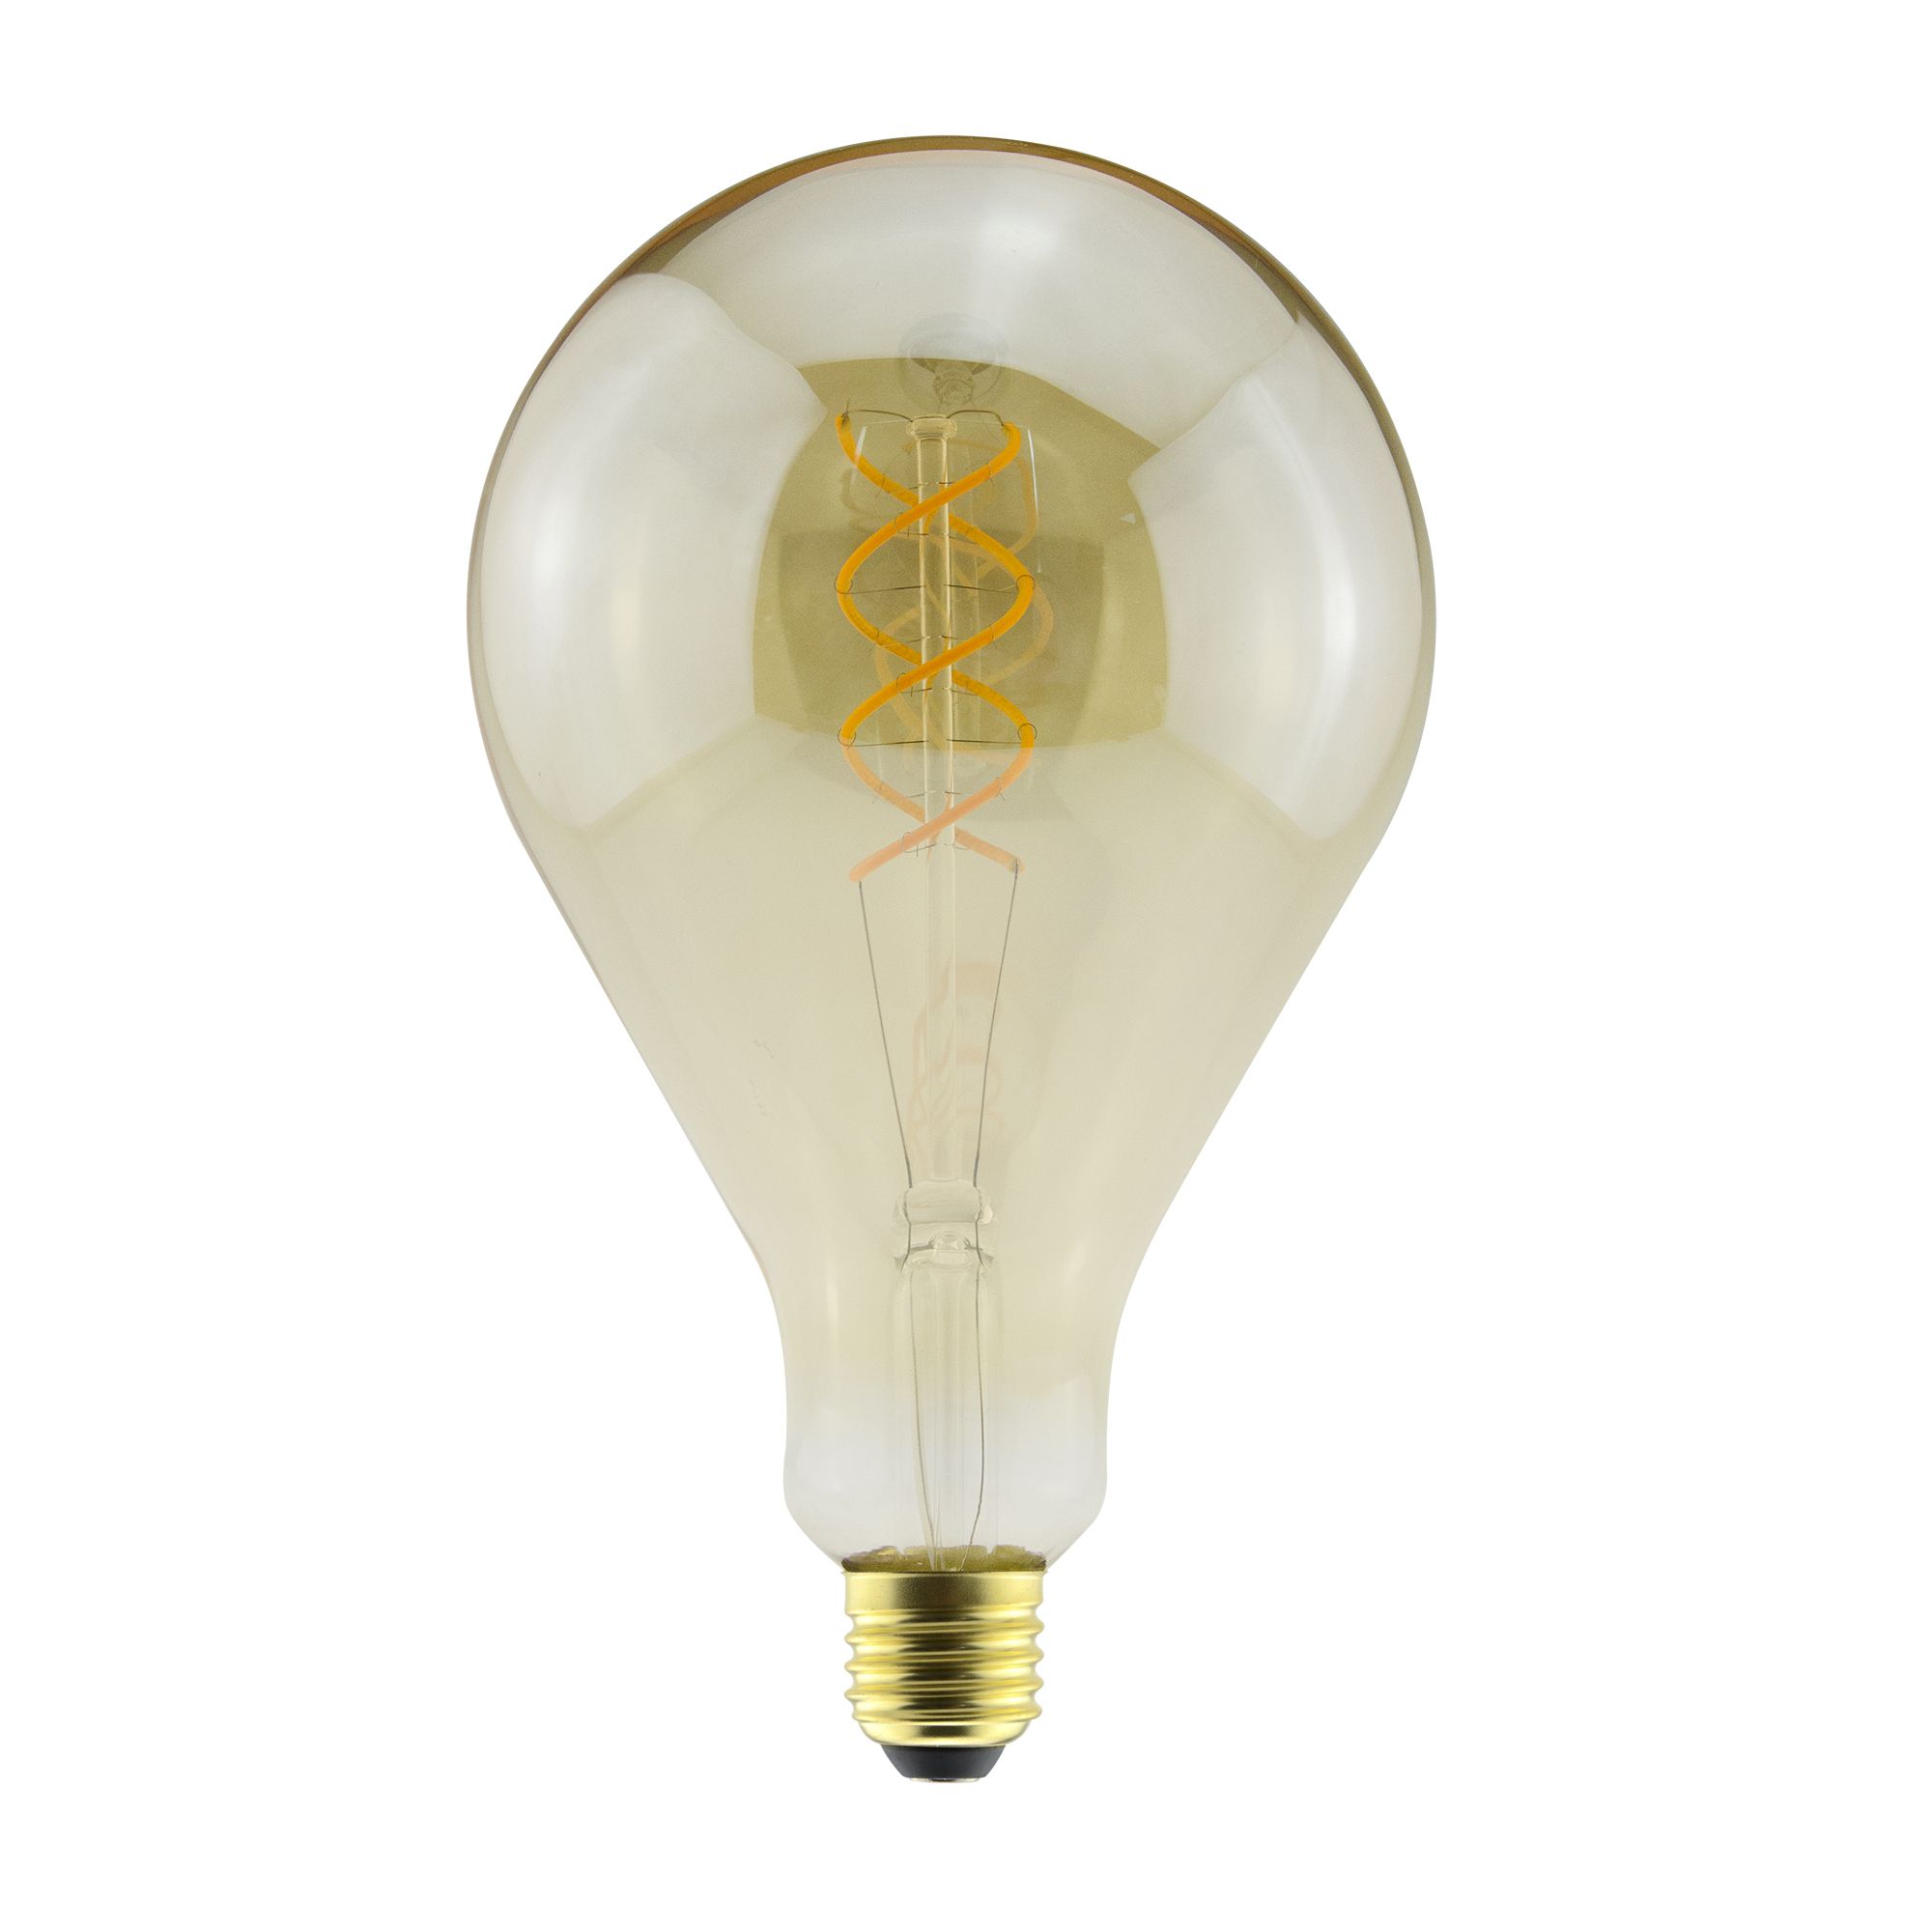 Ampoule LED Filament E27 5W 250 lm Dimmable Mushroom Vintage  Creative-Cables DL700145 - Ledkia